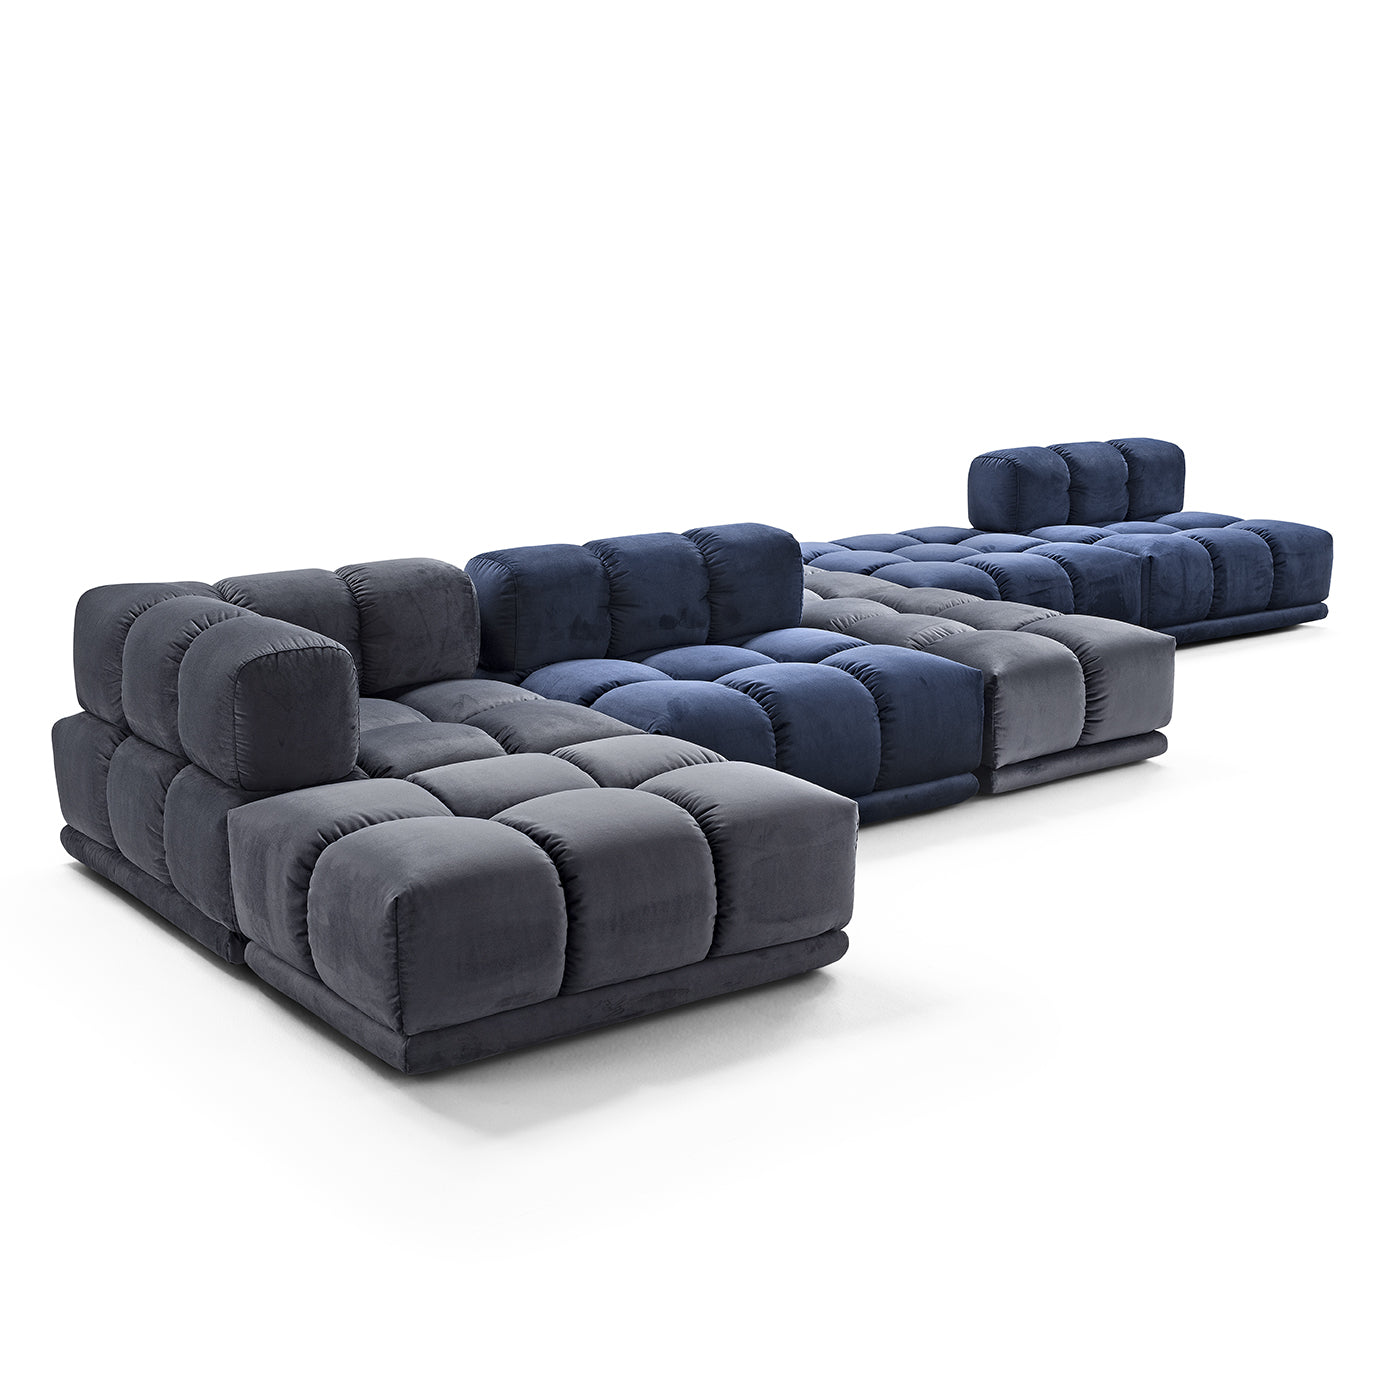 Sacai Modular Gray and Blue Sofa - Alternative view 2